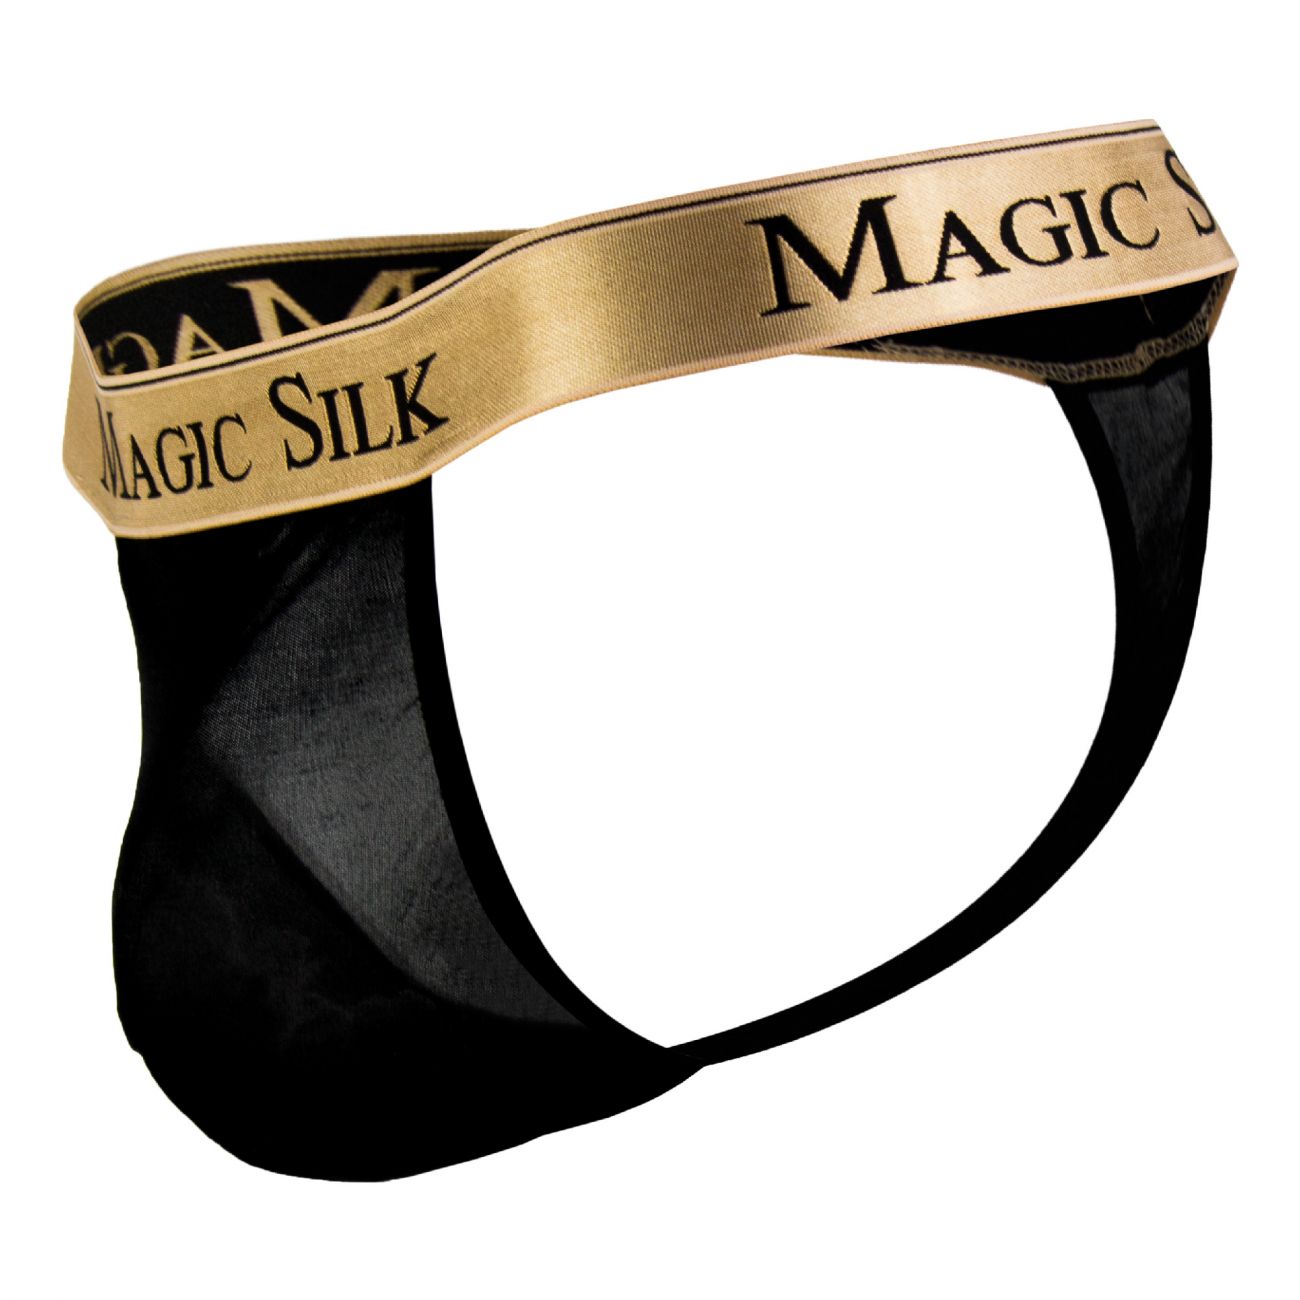 Magic Silk 4586 Silk Knit Micro Thong Black